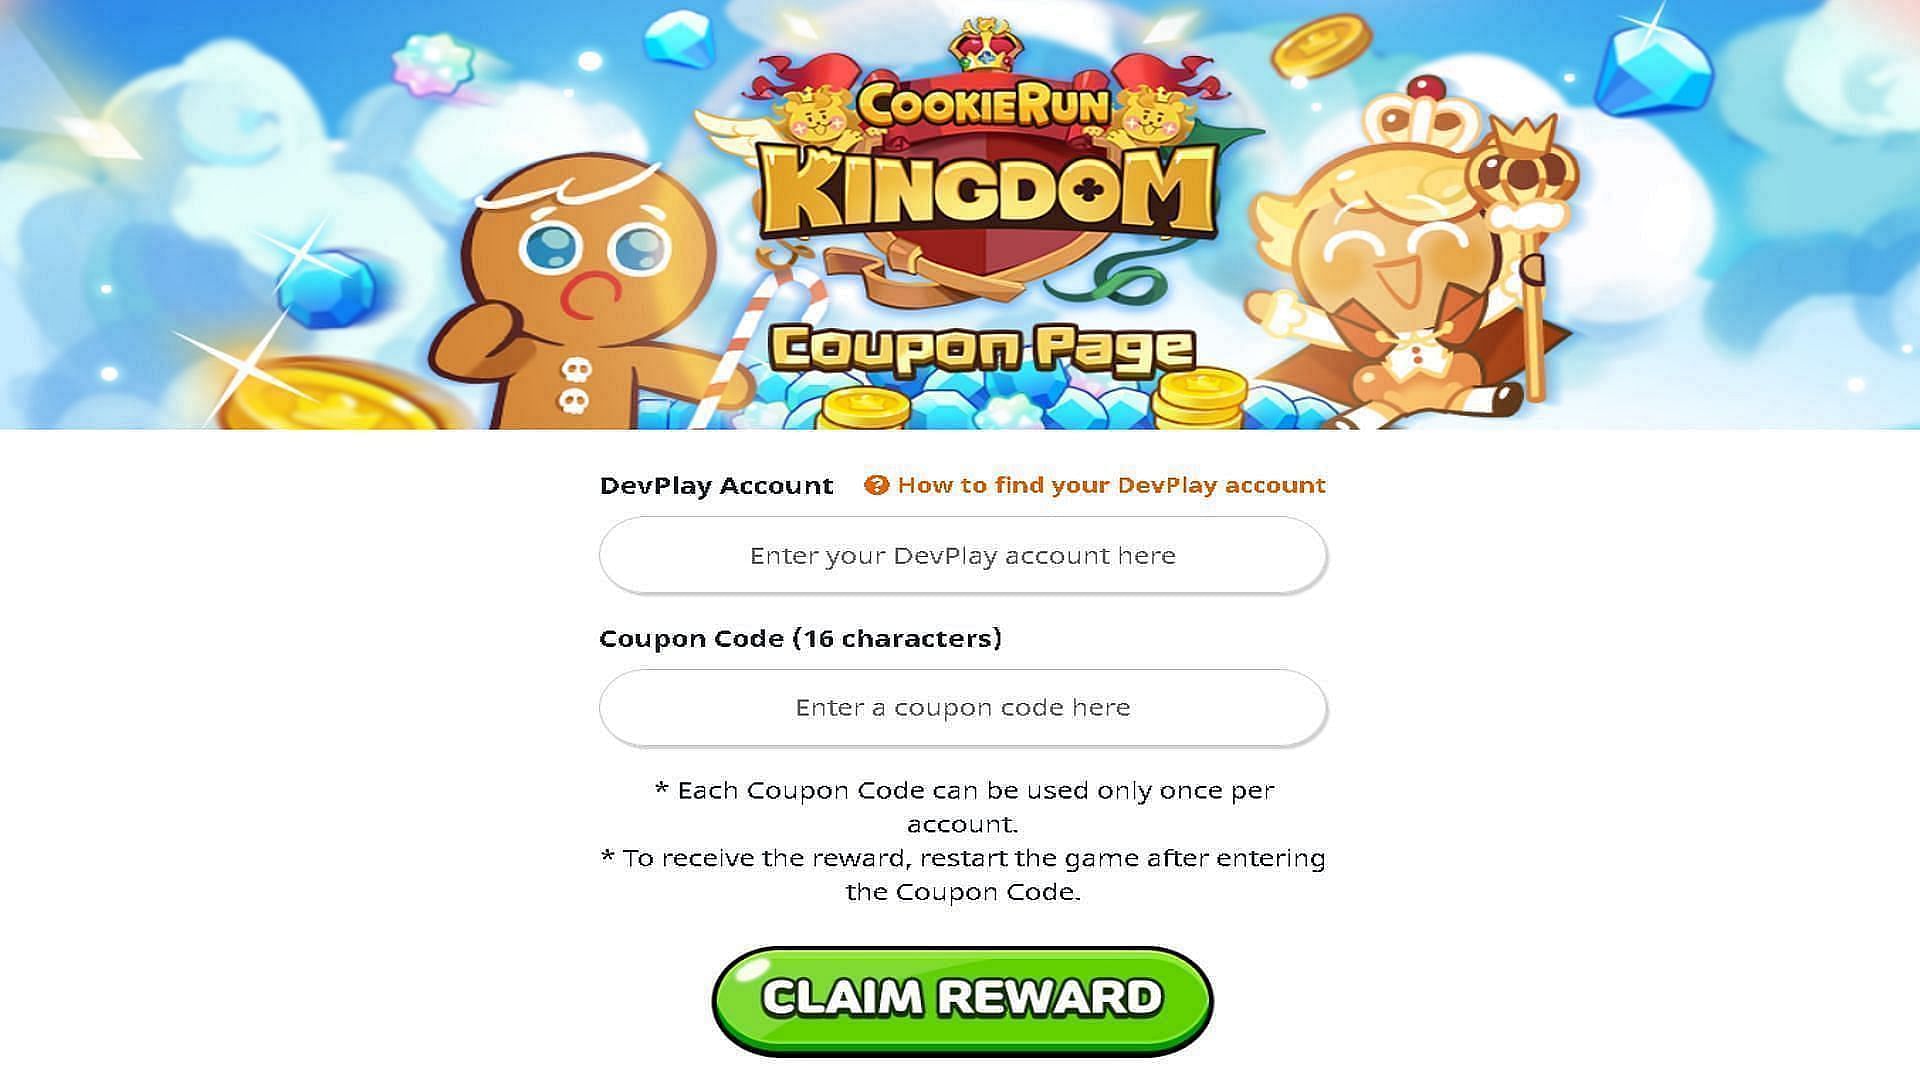 List of Cookie Run Kingdom redeem codes (March 22, 2022)